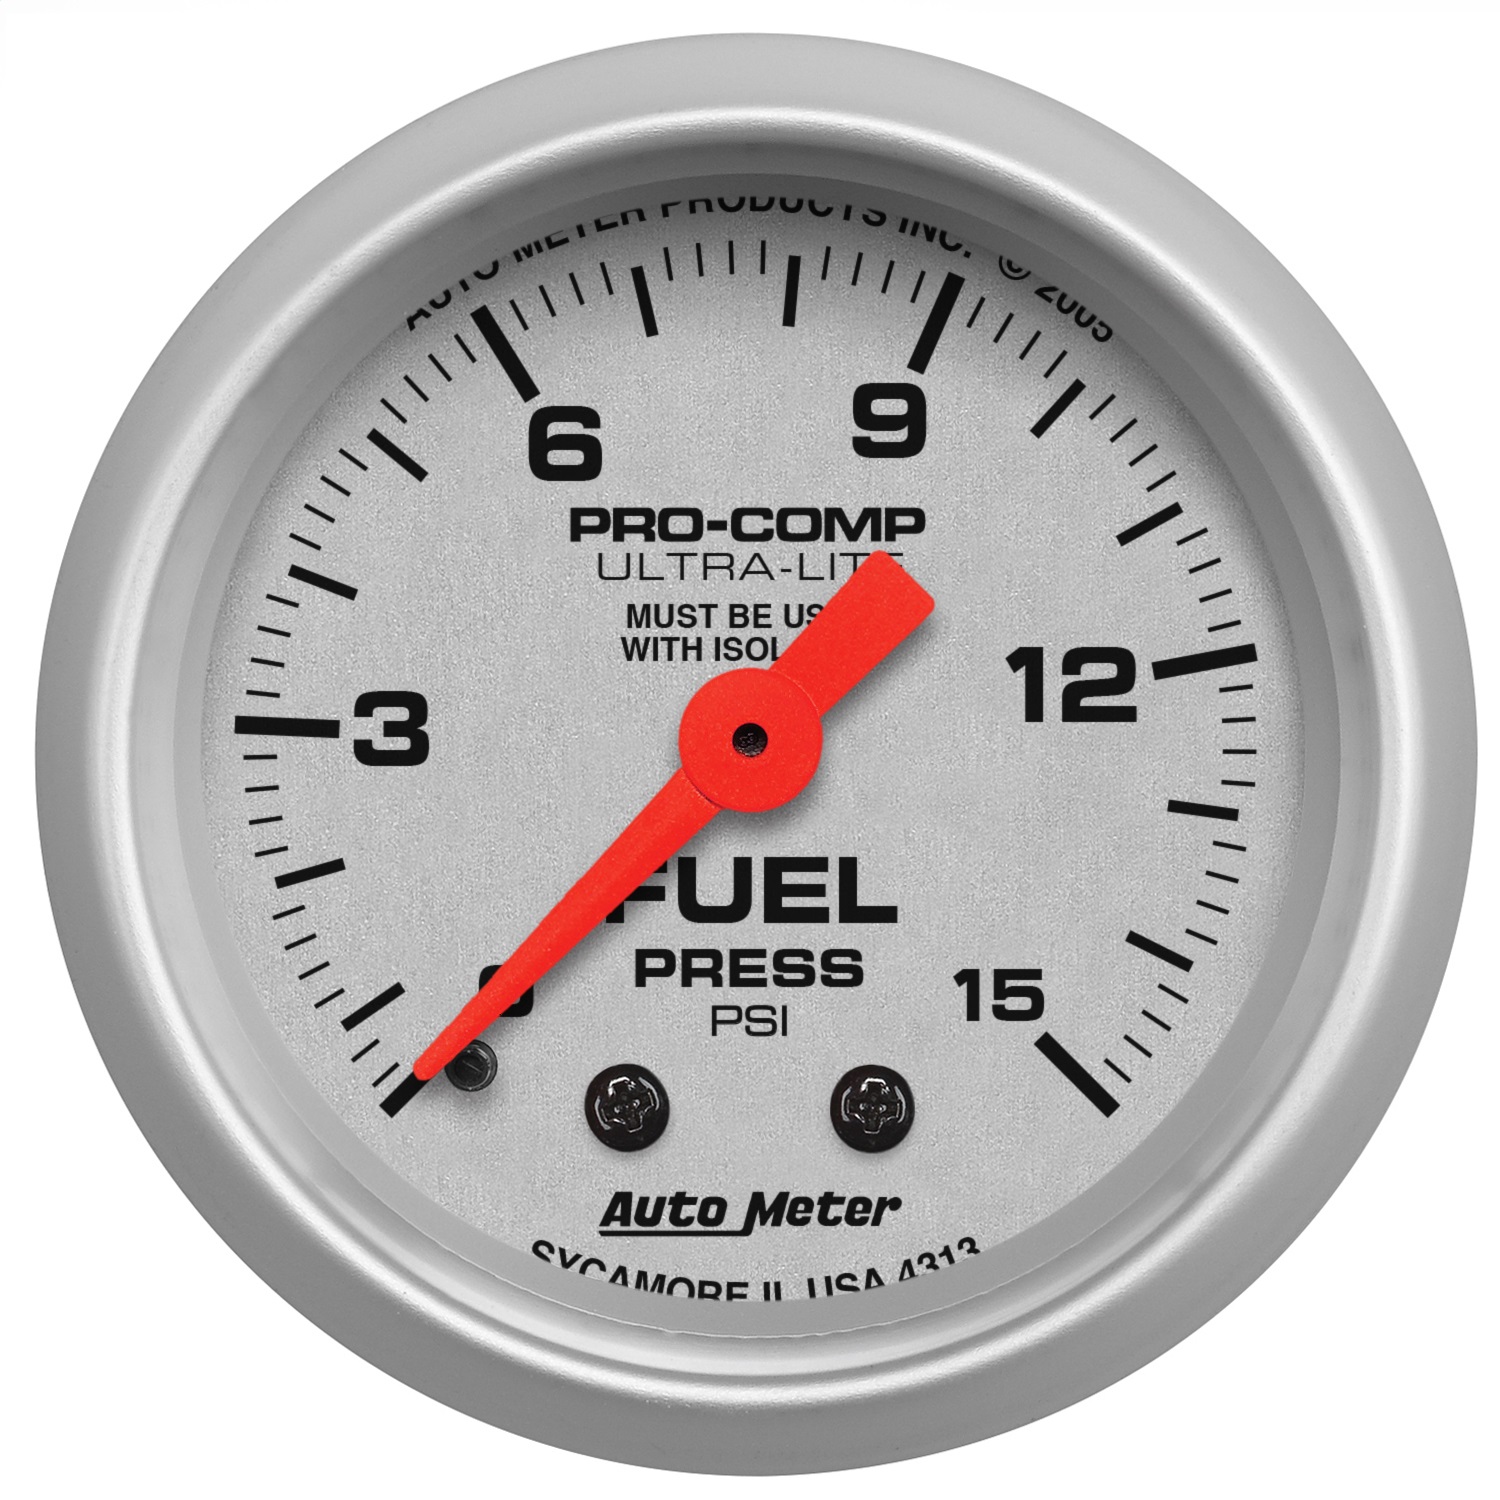 Auto Meter Auto Meter 4313 Ultra-Lite; Mechanical Fuel Pressure Gauge